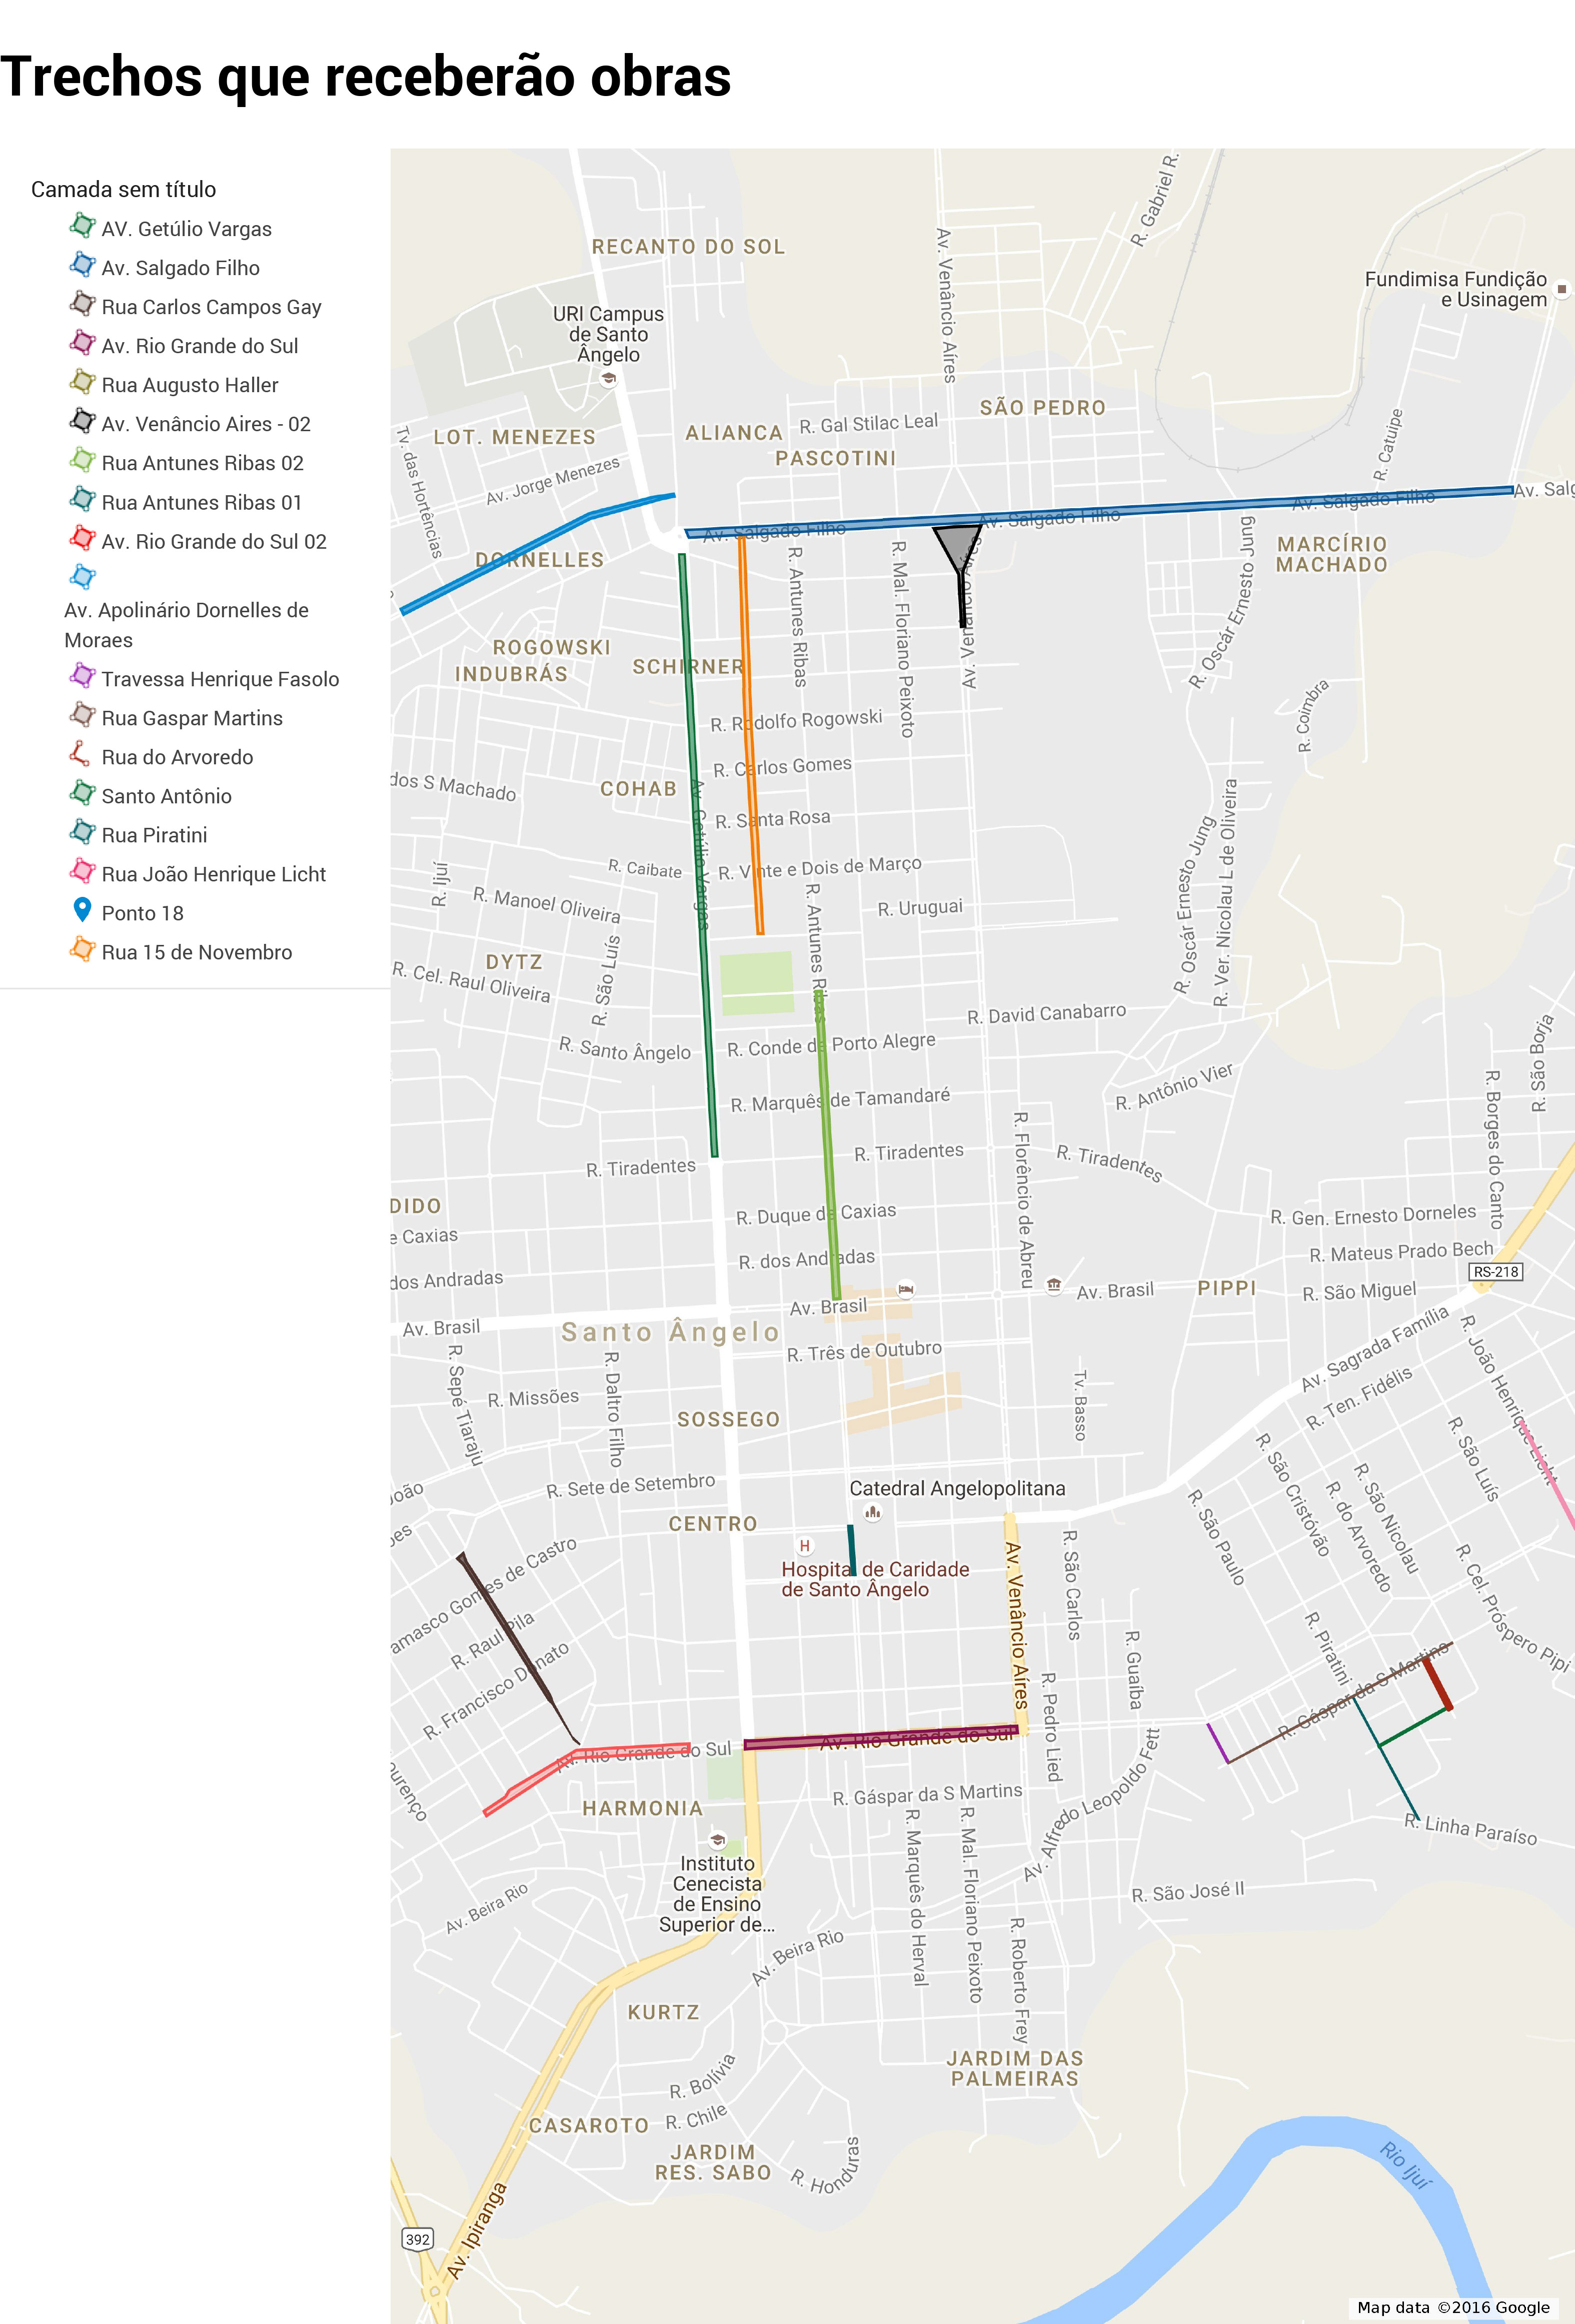 Mapa com a marcação das ruas que receberão obras confeccionado com o auxílio de ferramentas do Google Maps